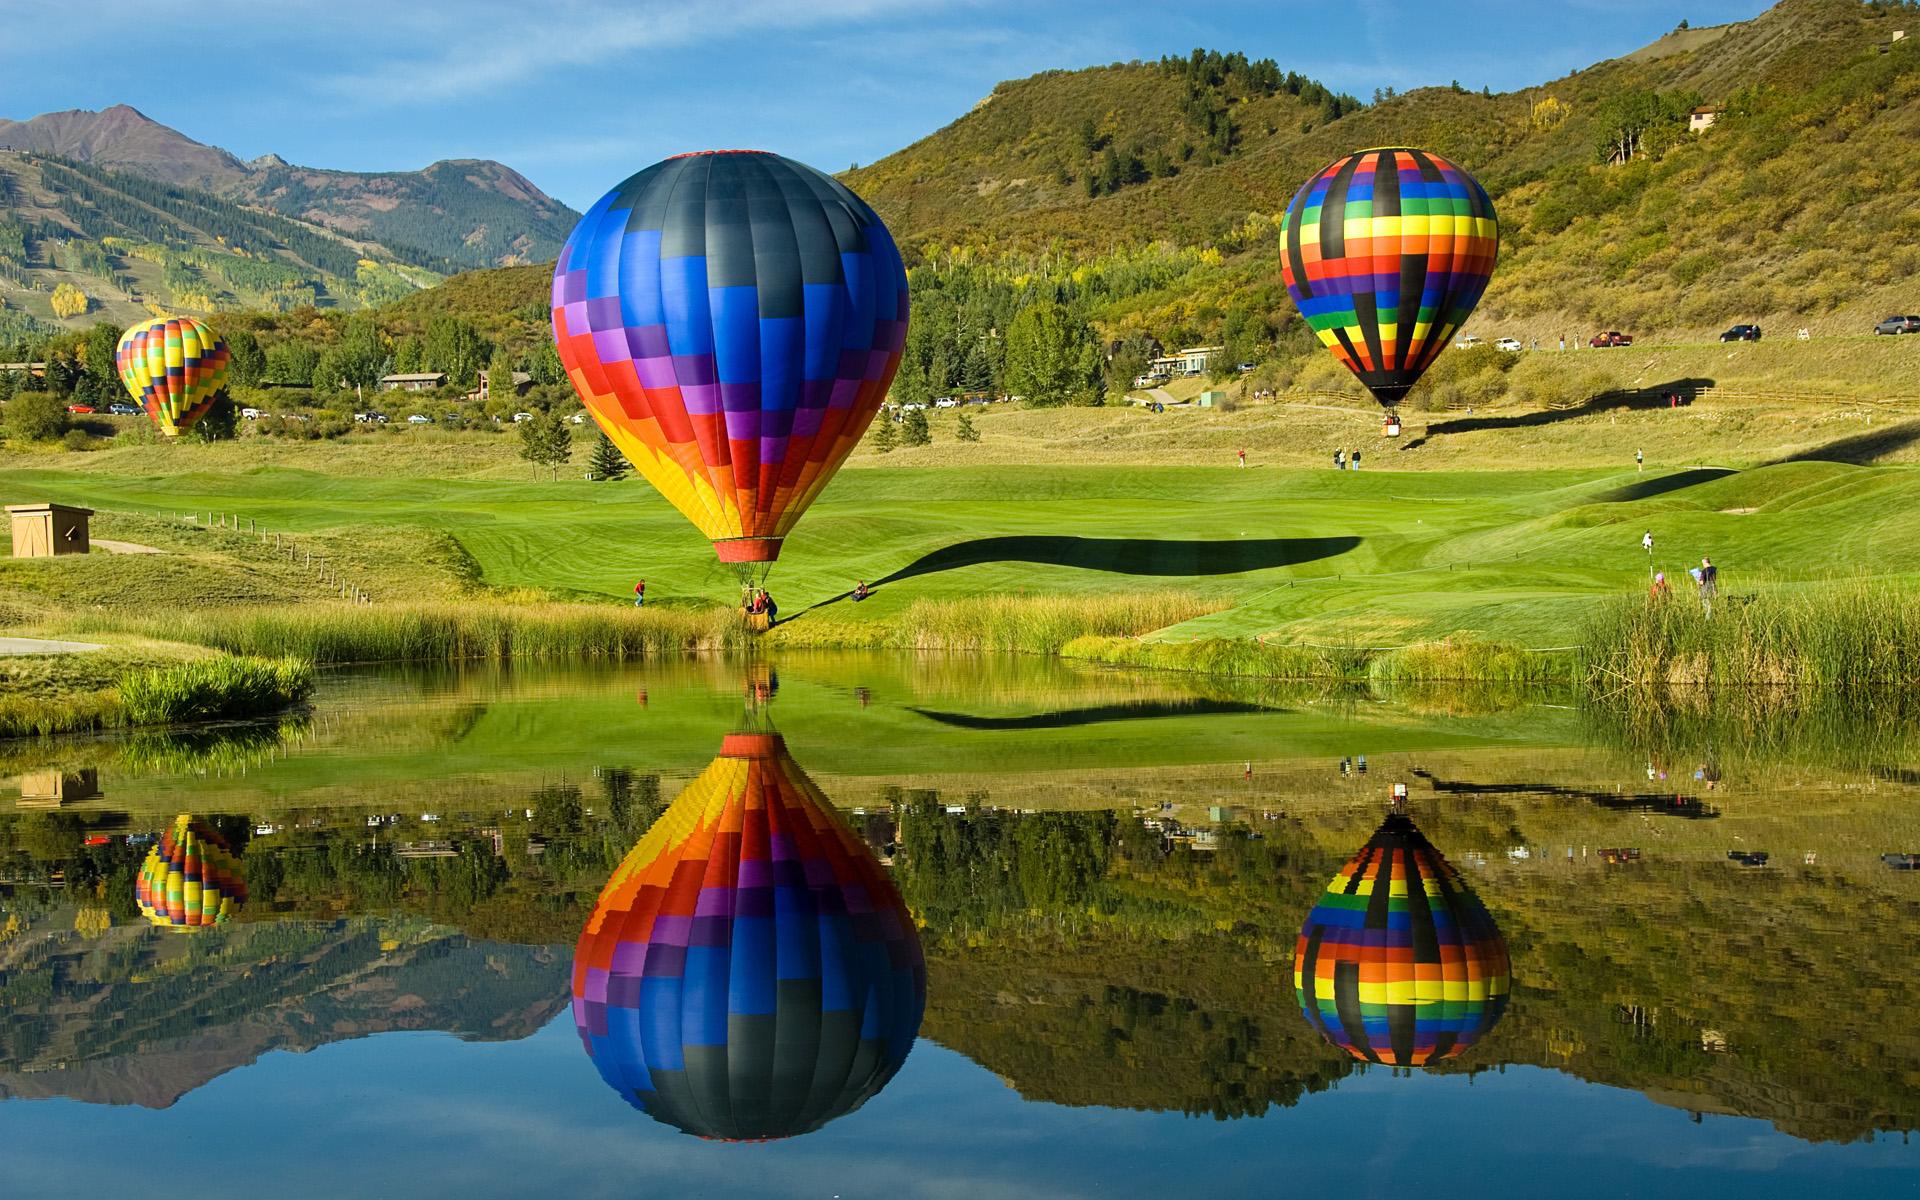 Hot Air Balloons - Wallpaper, High Definition, High Quality, Widescreen